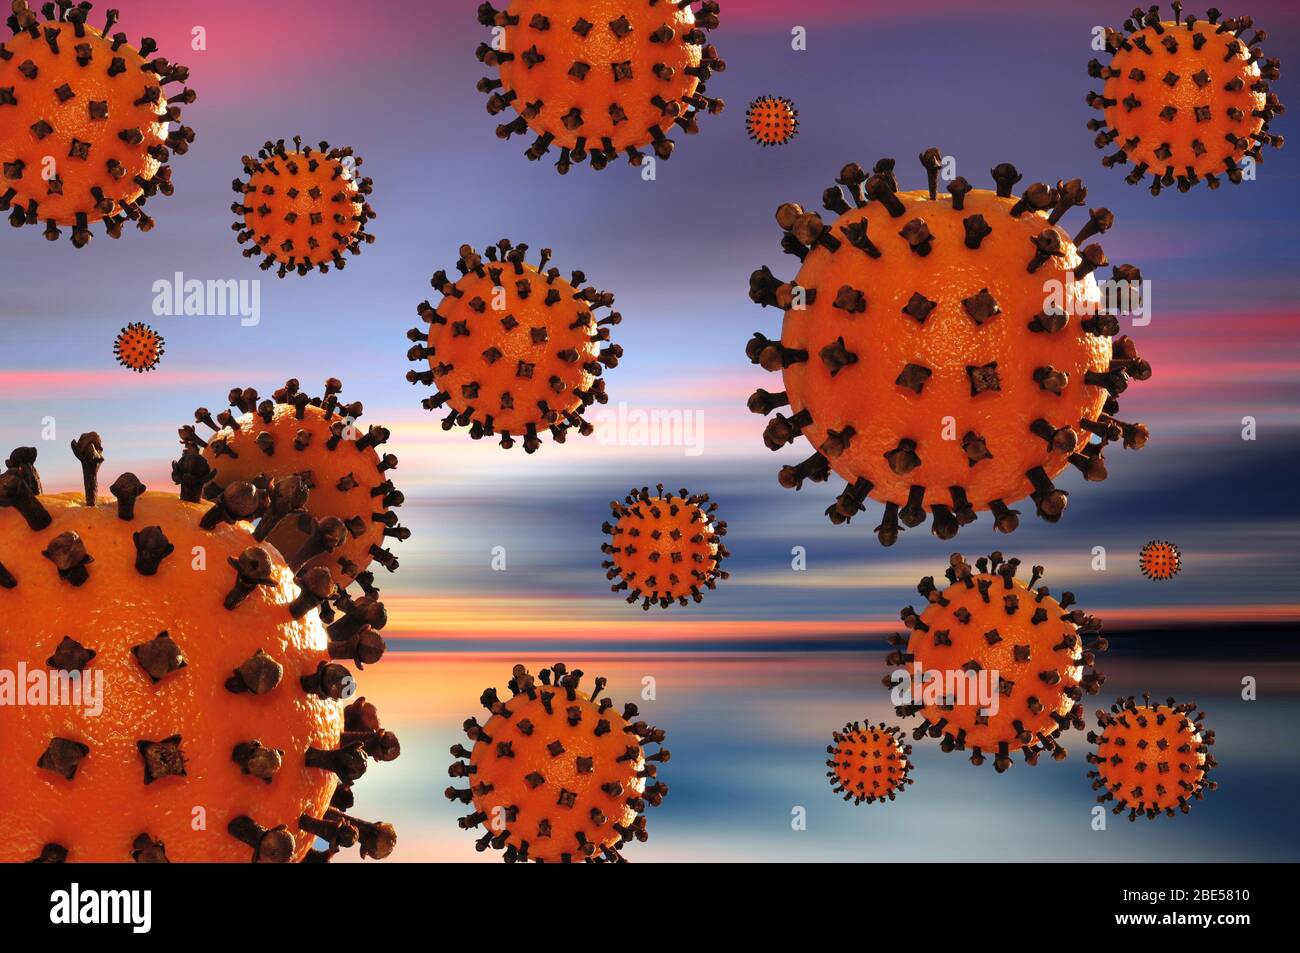 Composizione con un modello di virus corona costituito da un aranciato con chiodi di garofano Foto Stock